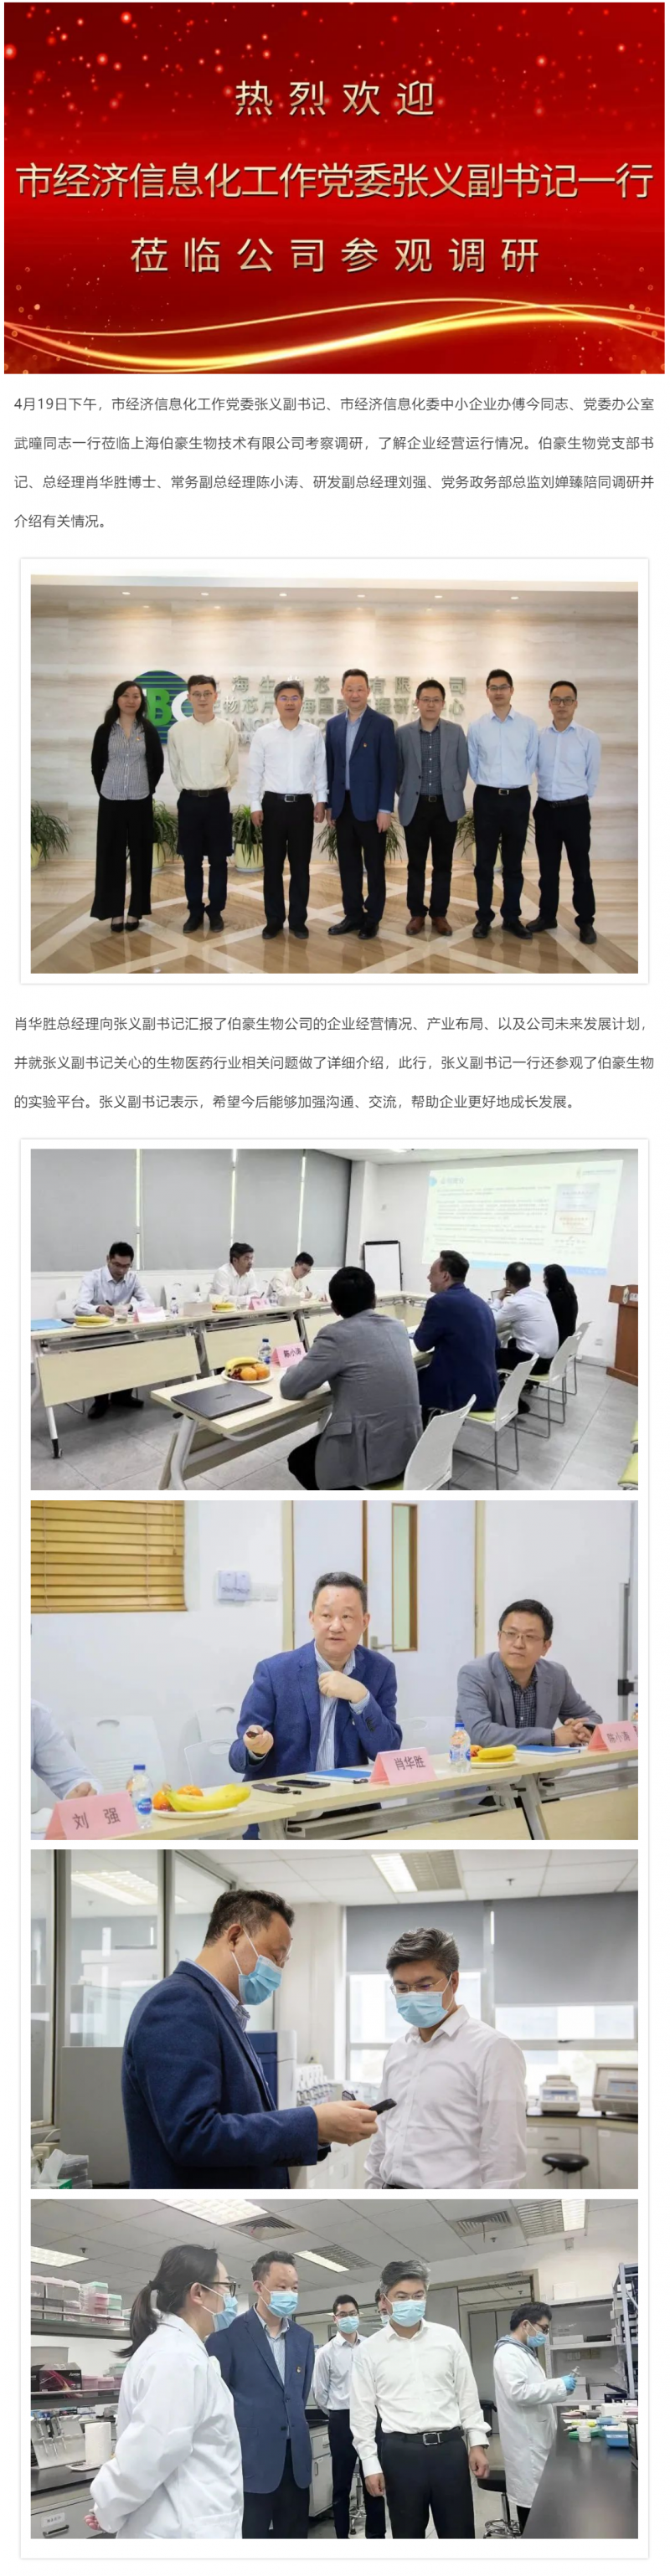 上海市经济信息化工作党委张义副书记调研伯豪生物